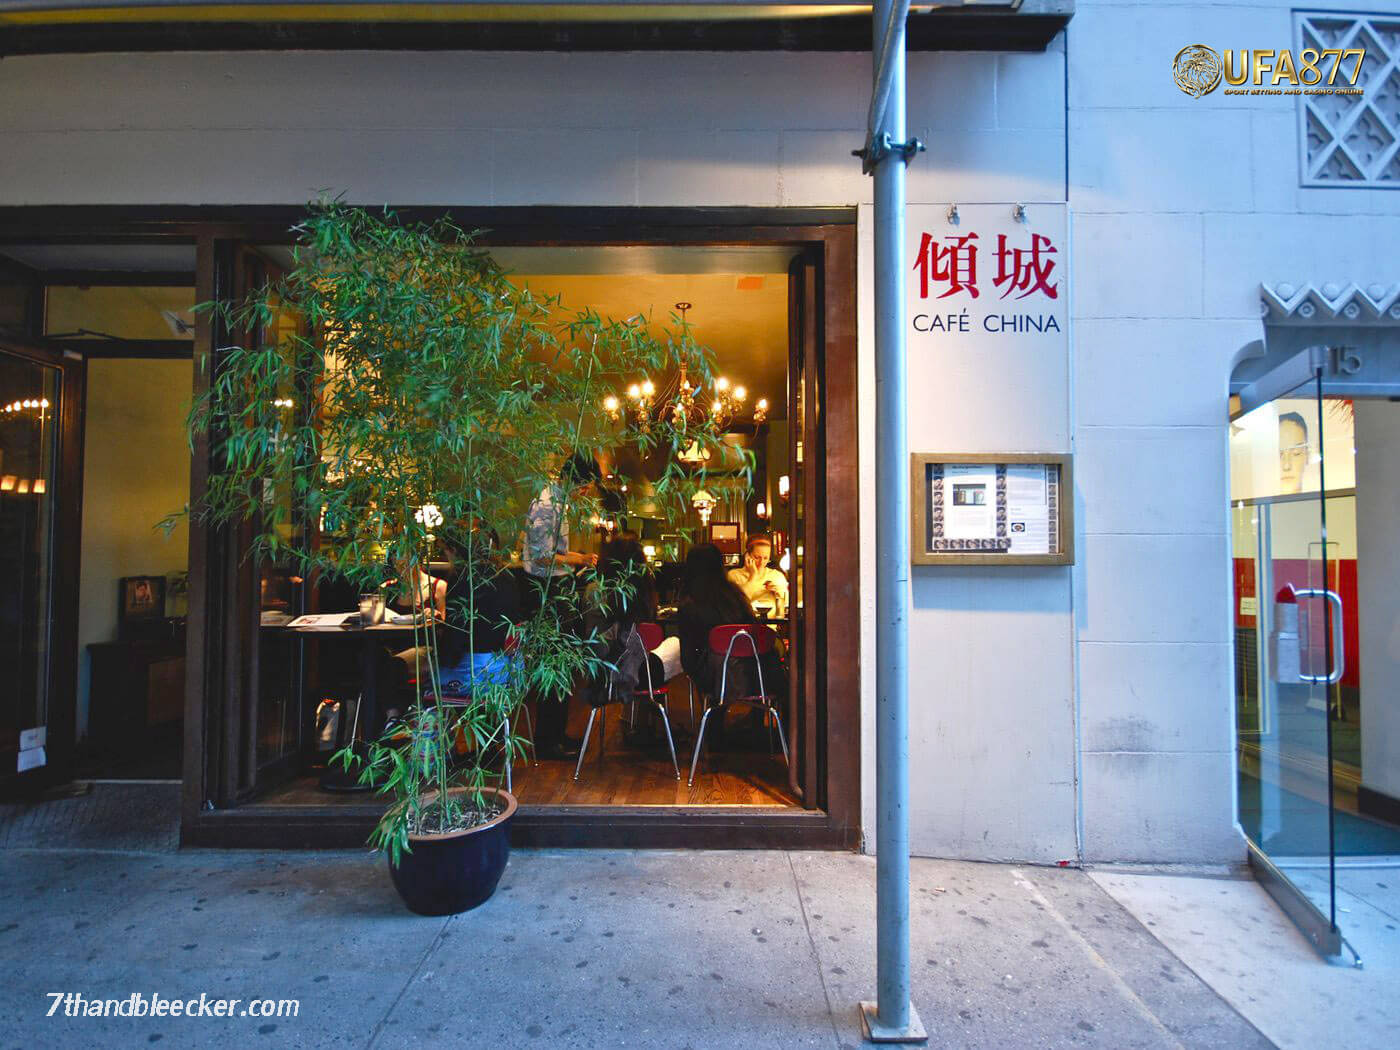 คาเฟ่ที่น่าสนใจสไตล์จีนในนิวยอร์ก  Cafe China